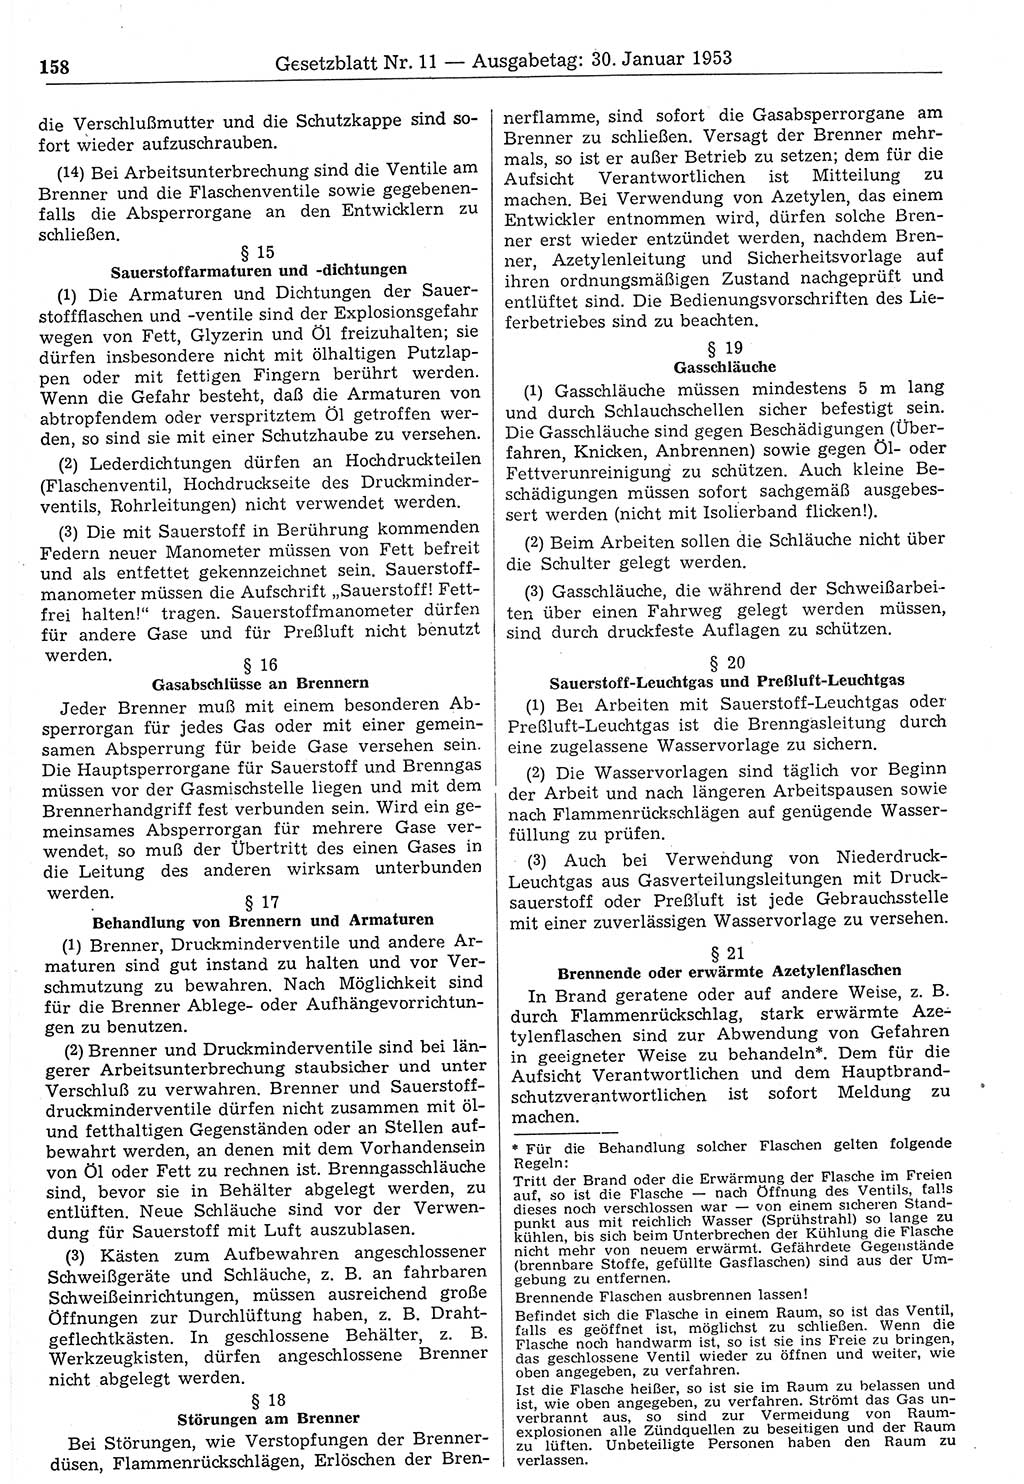 Gesetzblatt (GBl.) der Deutschen Demokratischen Republik (DDR) 1953, Seite 158 (GBl. DDR 1953, S. 158)